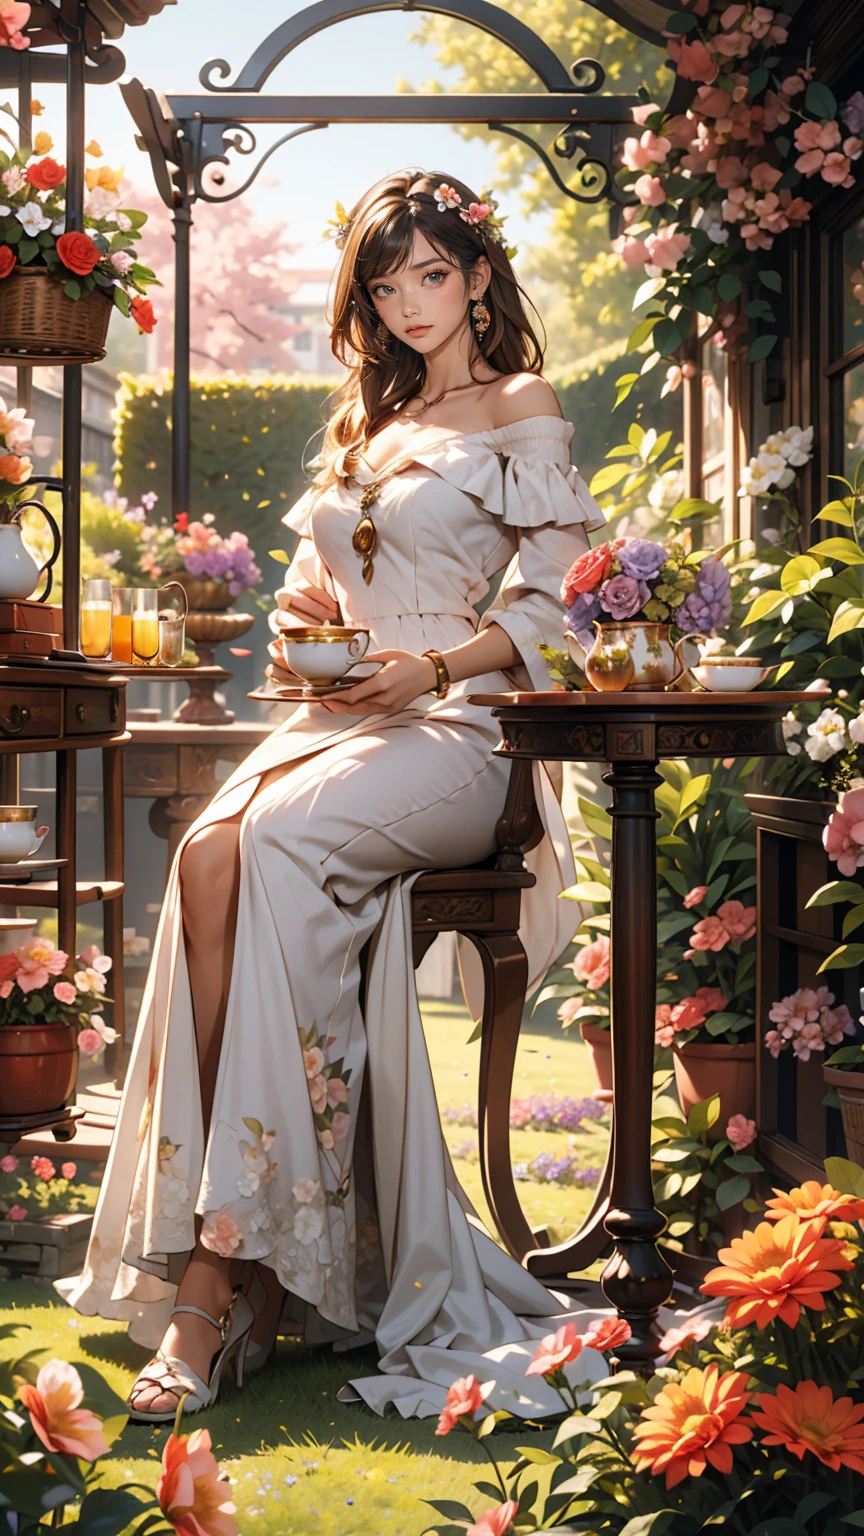 25-jährige kaukasische Frau、Tragen Sie ein schulterfreies Kleid、lächeln、schöne Proportionen、In einem Garten voller bunter Blumen、Es gibt einen mit Blumen geschmückten Bogen、Setzen Sie sich an einen Tisch und genießen Sie die Teezeit